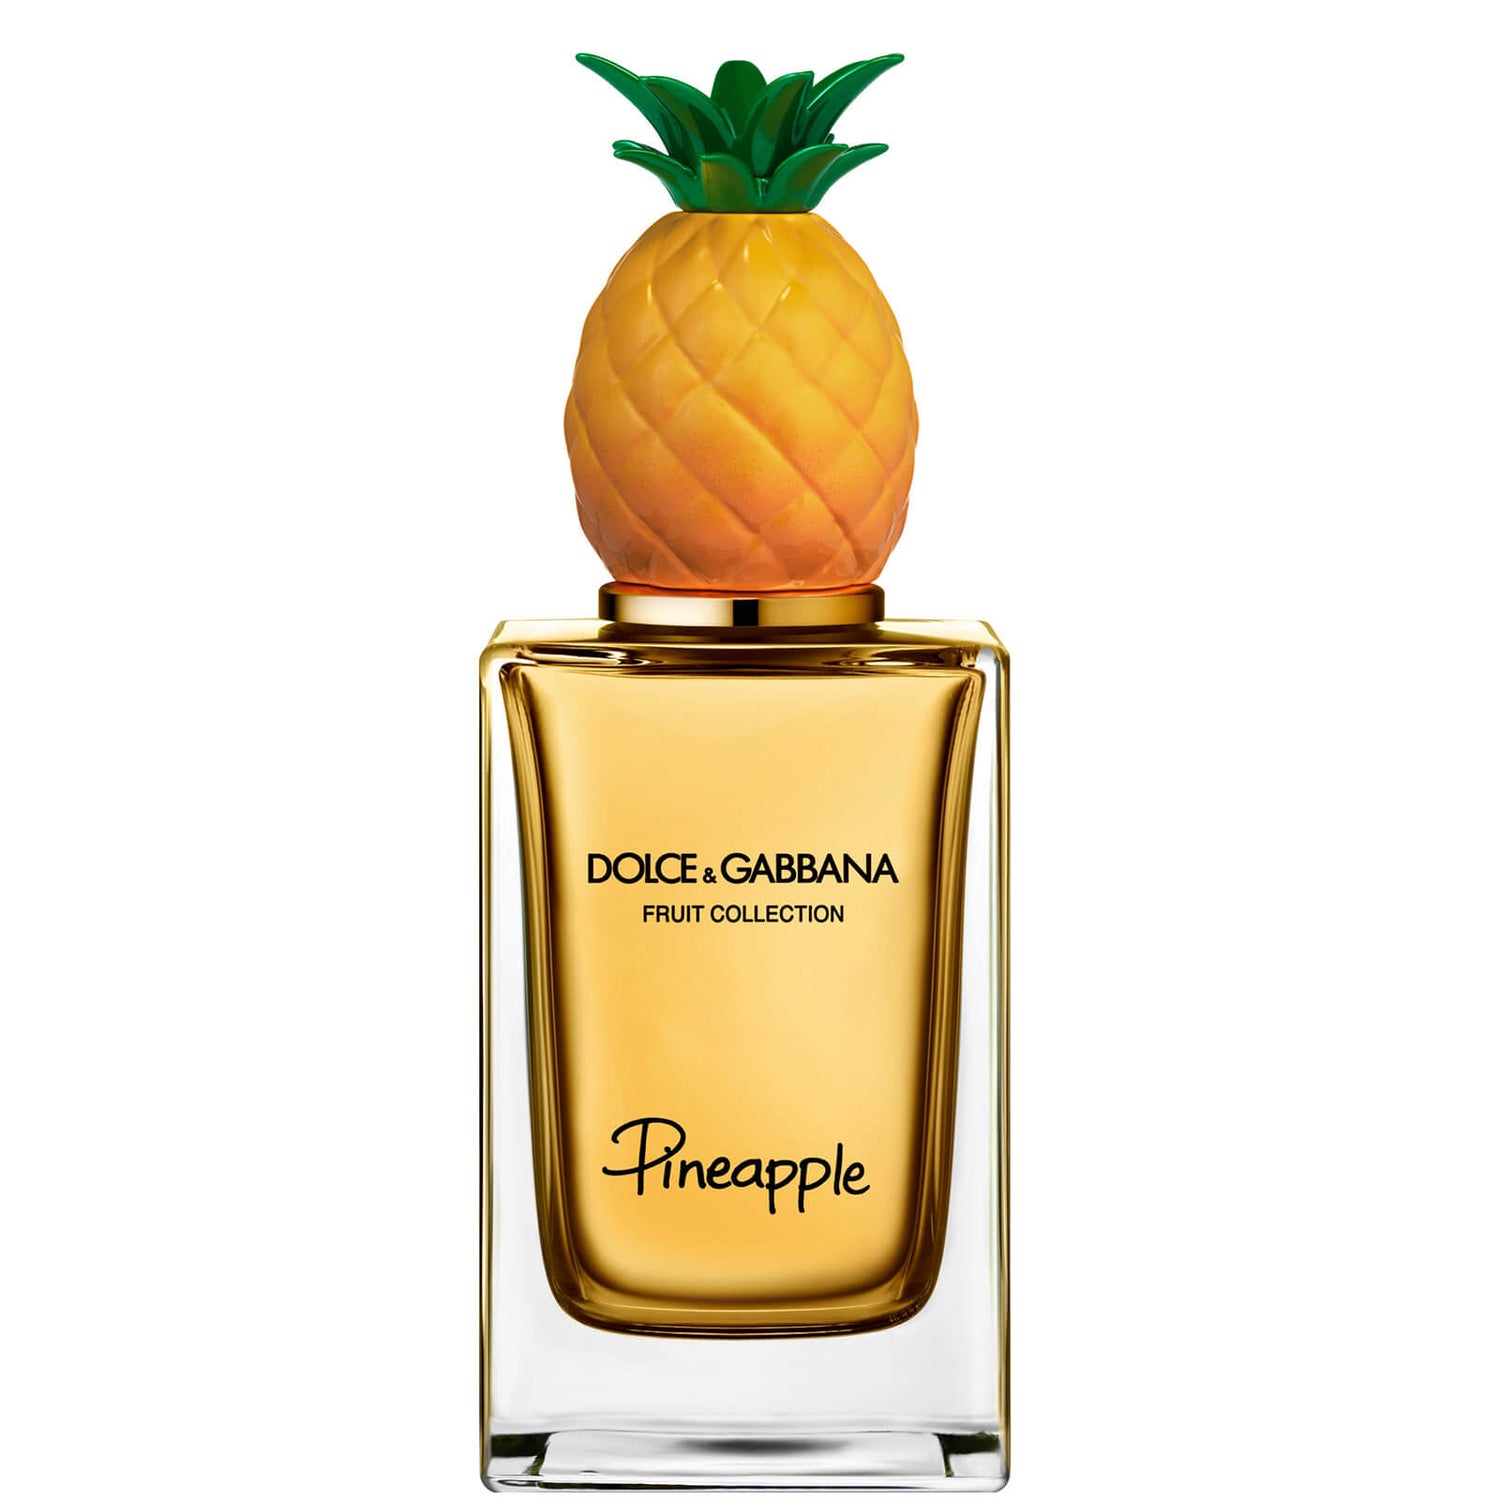 Dolce&Gabbana Fruit Collection Pineapple Eau de Toilette 150ml